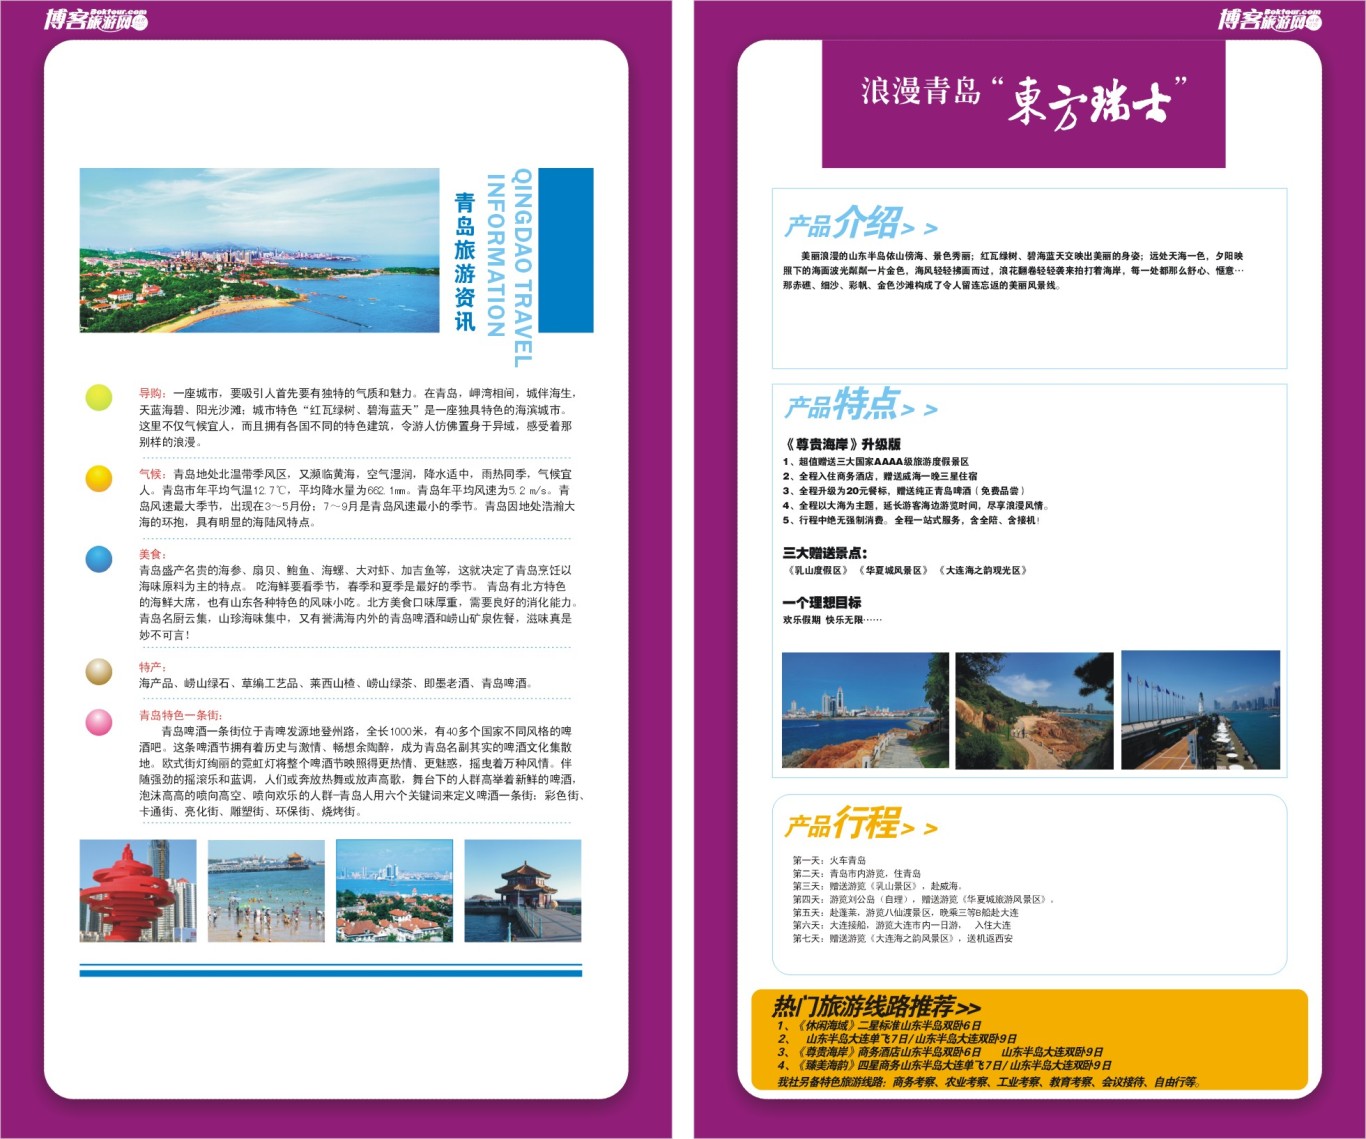 博客旅游网宣传手册设计图14